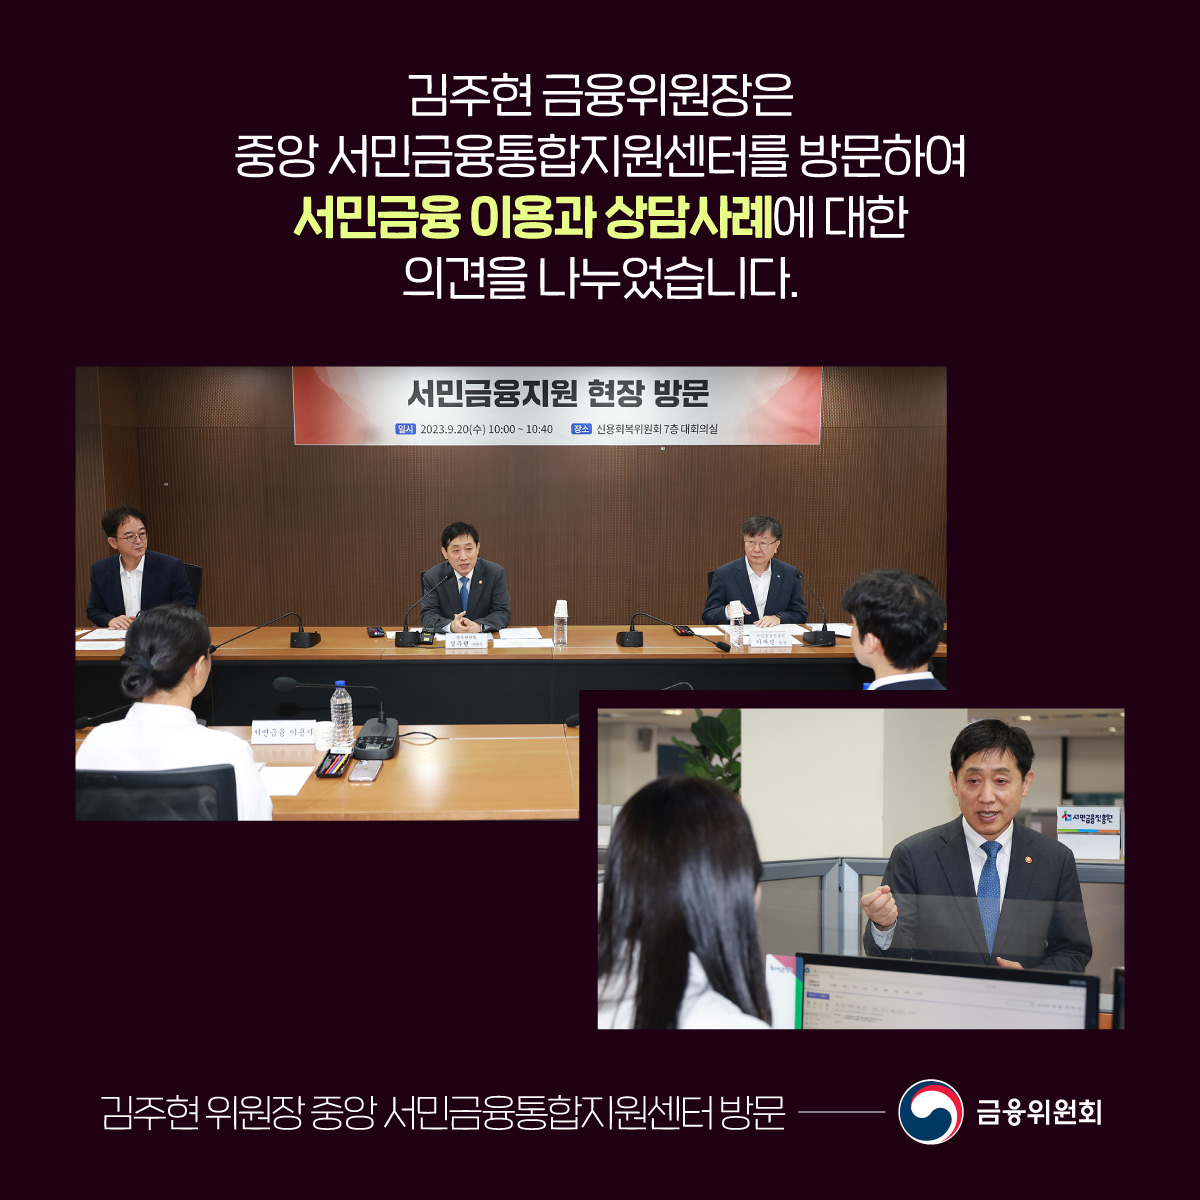 김주현 금융위원장은 중앙 서민금융통합지원센터를 방문하여 서민금융 이용과 상담사례에 대한 의견을 나누었습니다.